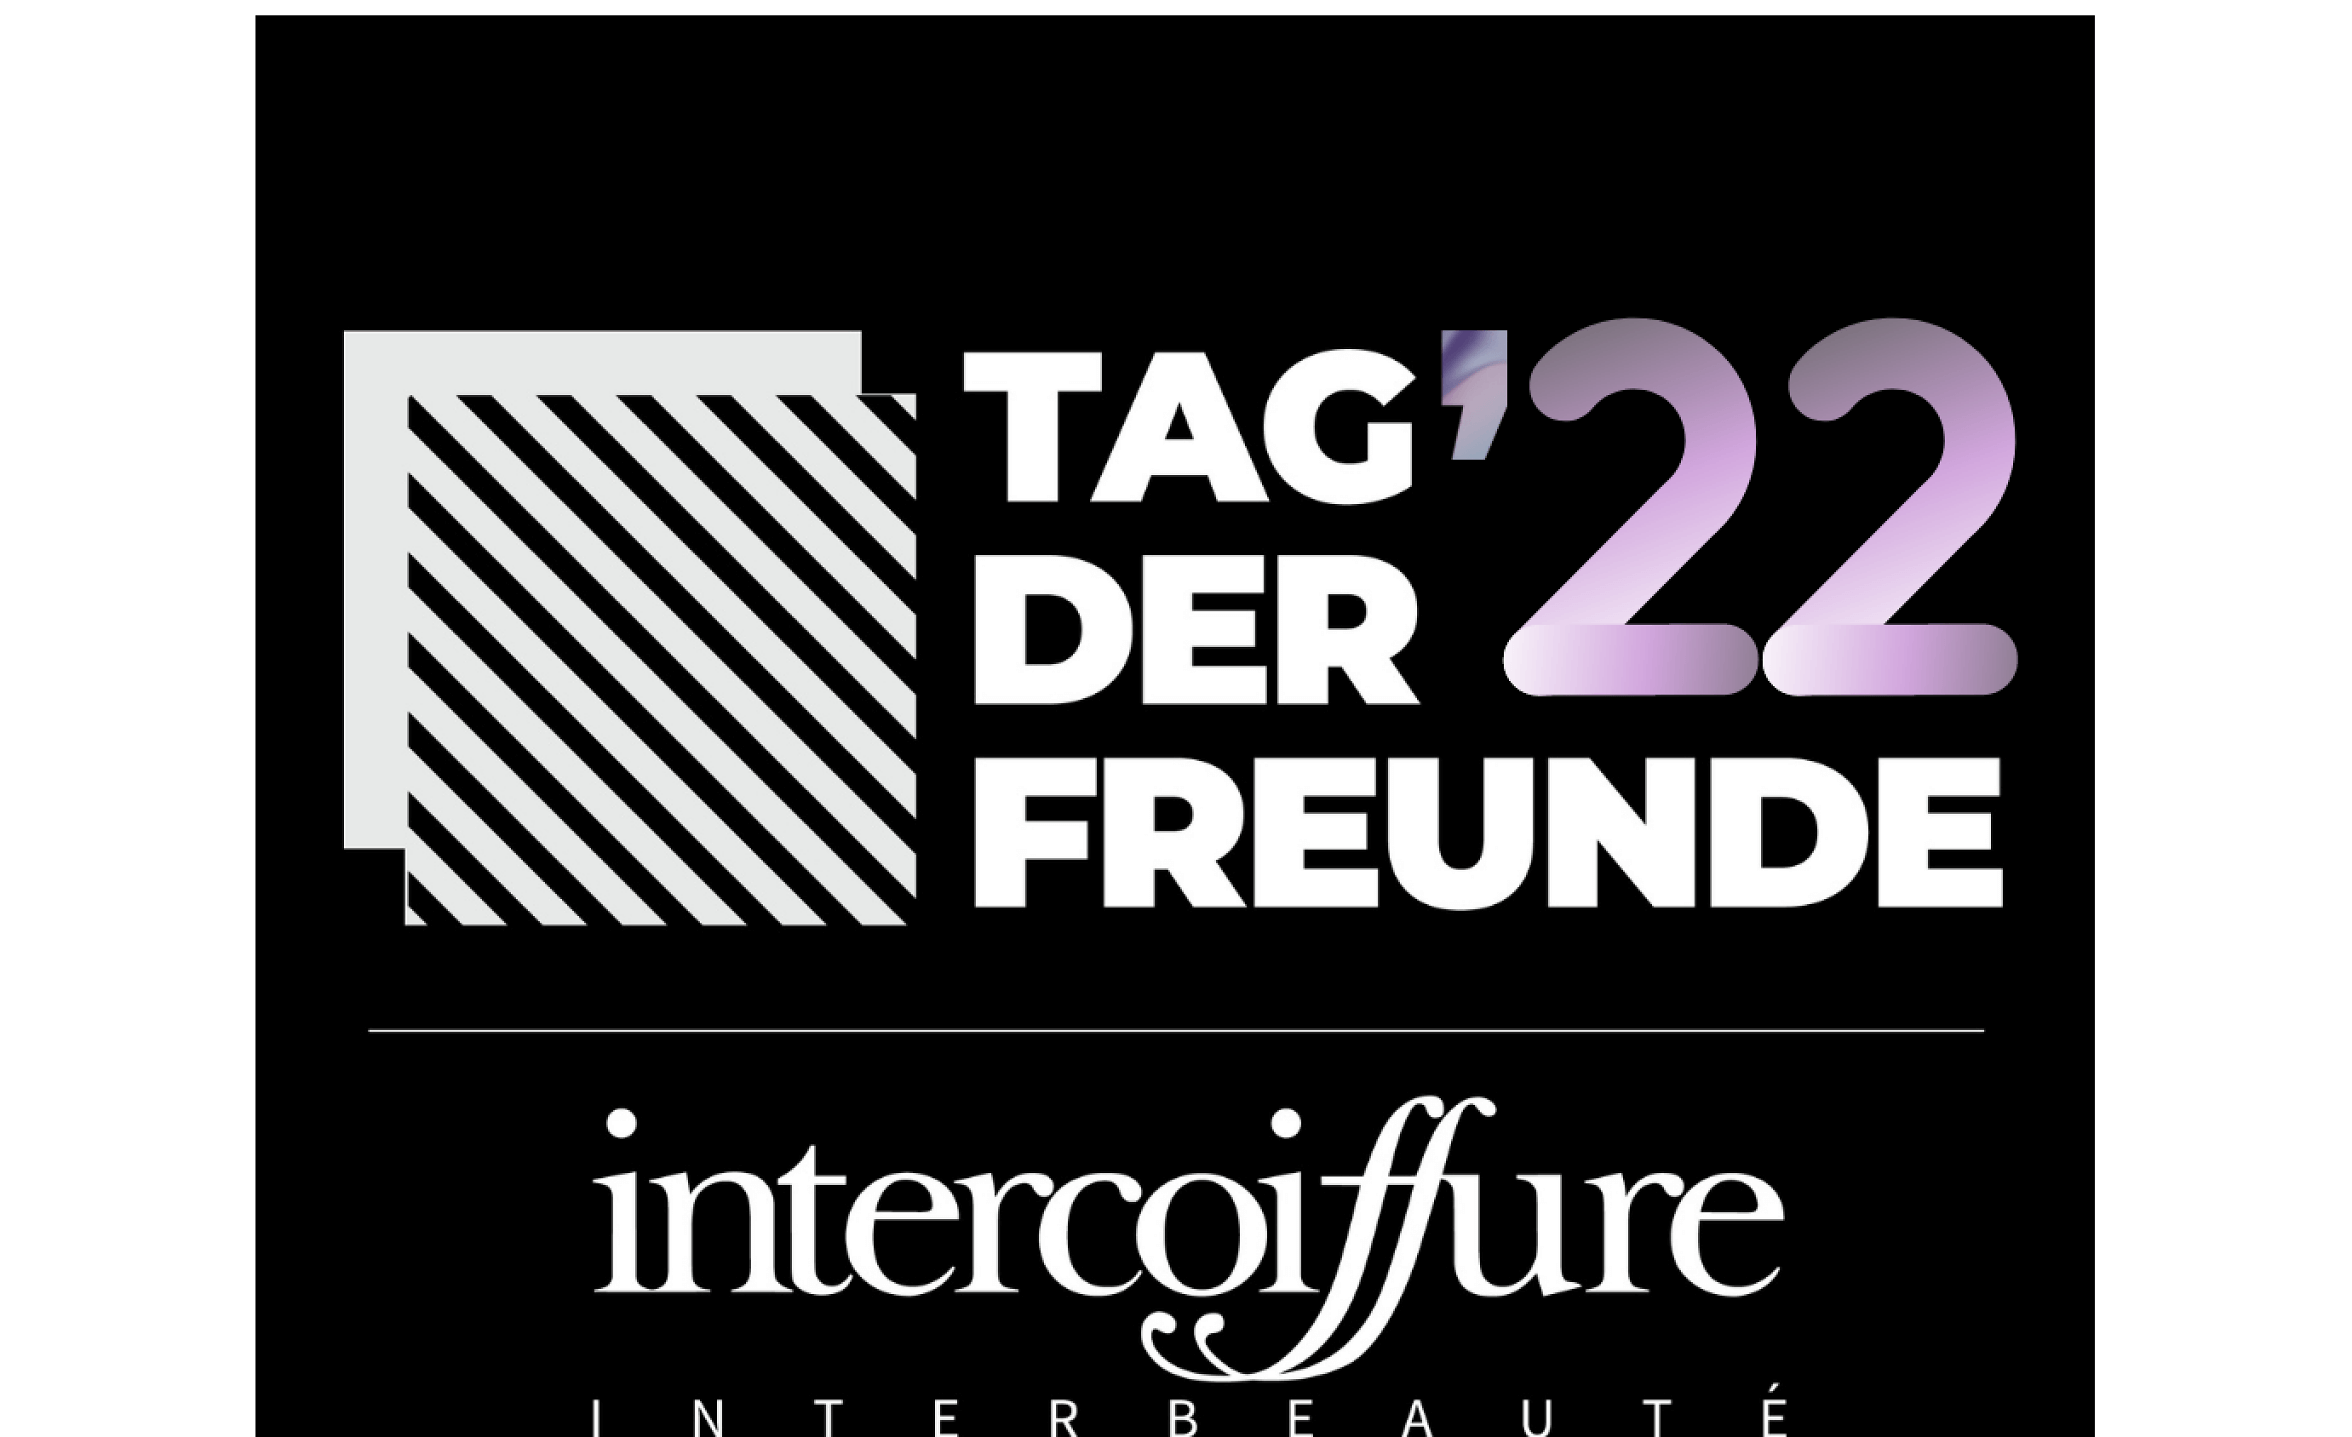 Event-Image for 'Tag der Freunde der Intercoiffure suisse'